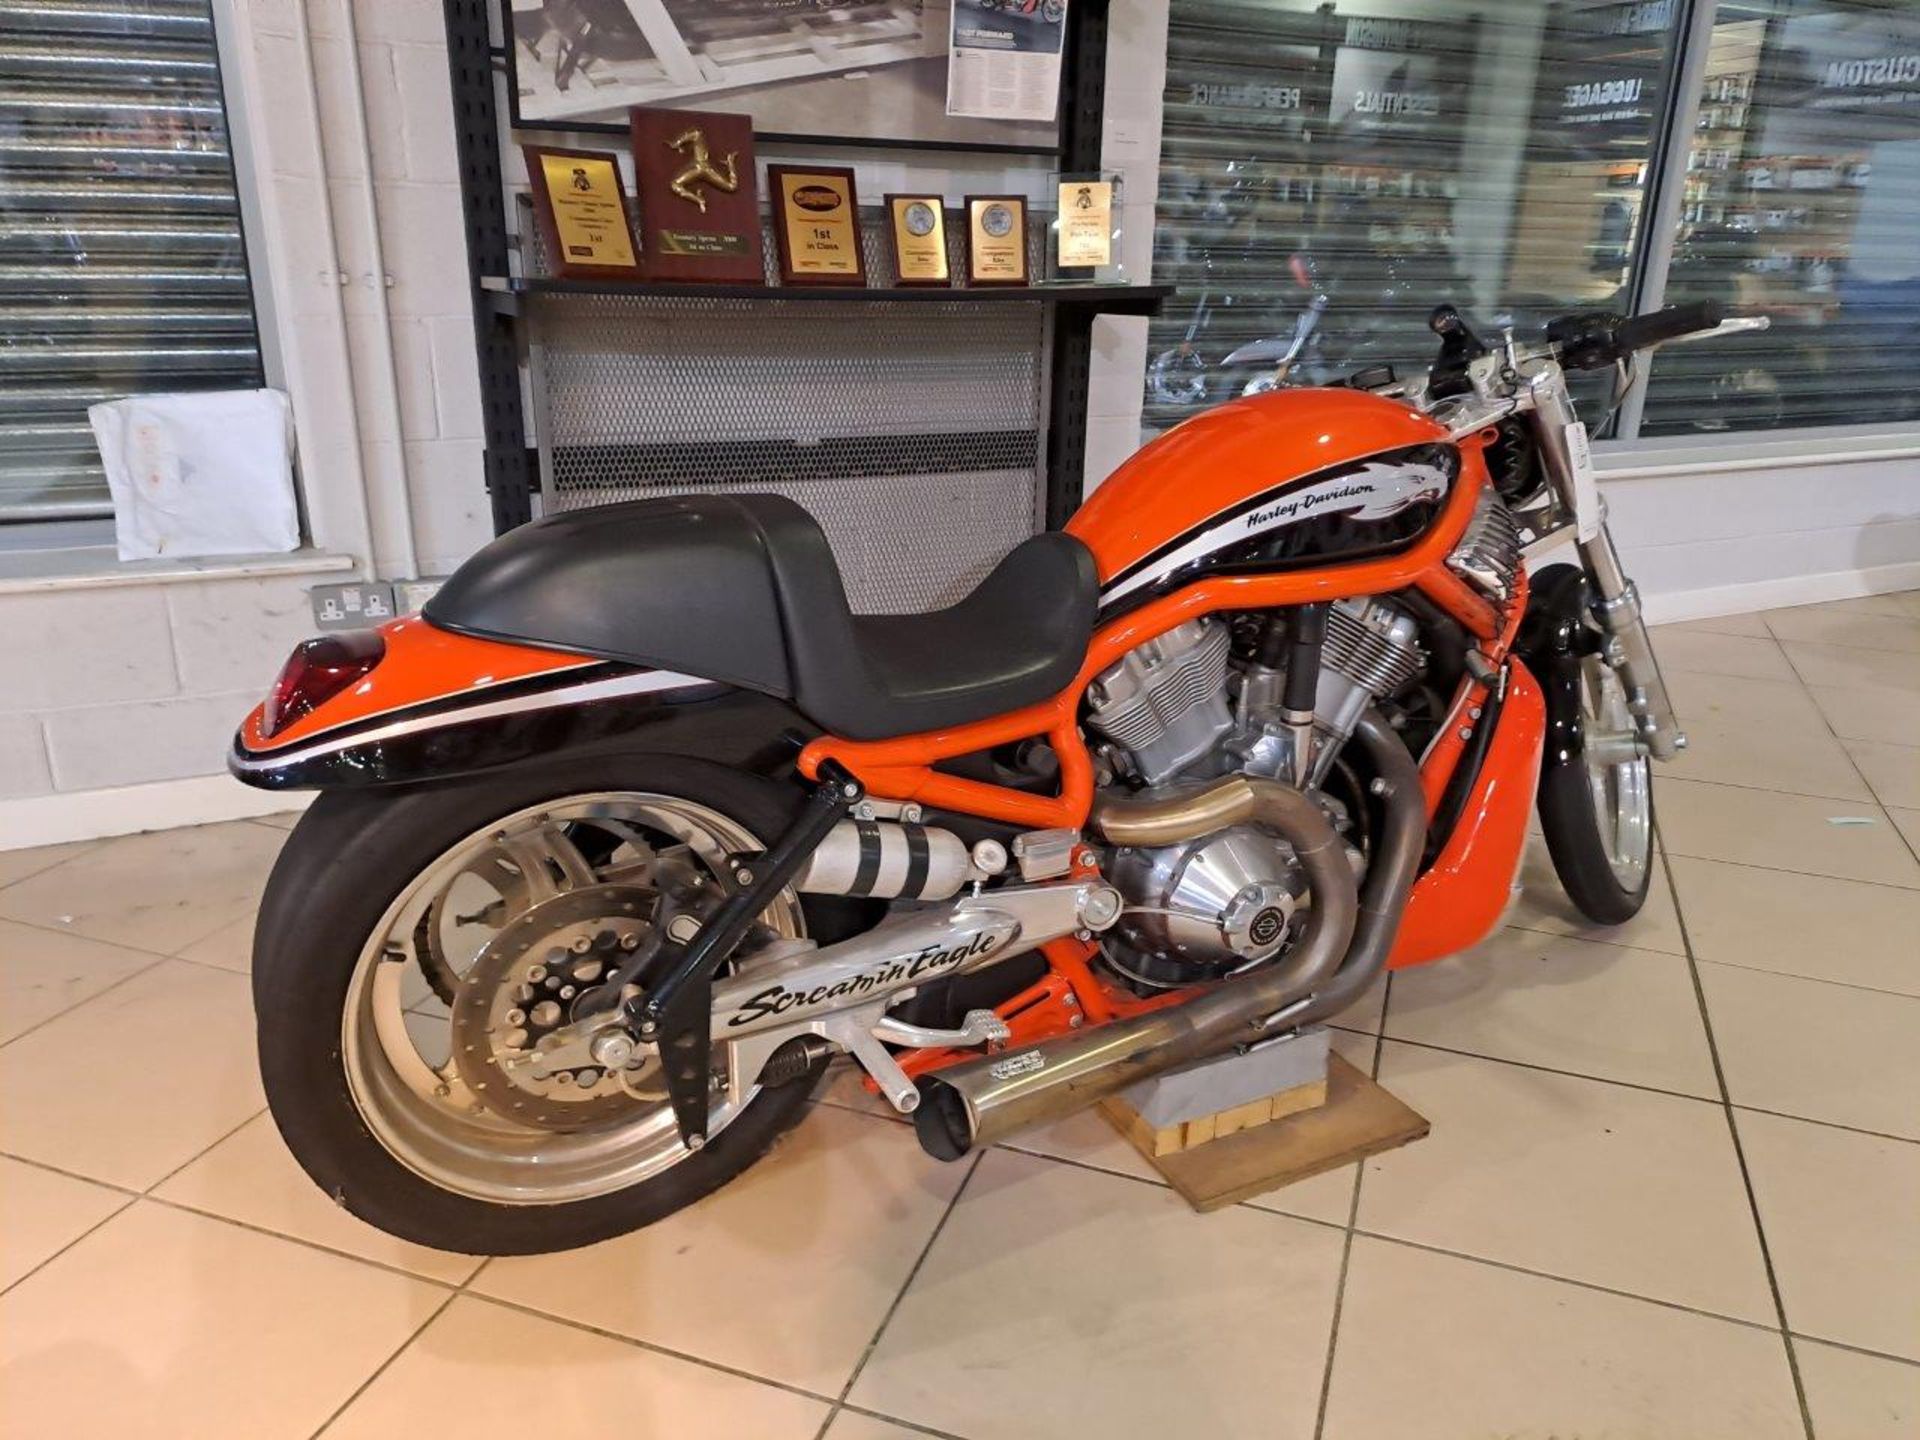 Harley Davidson V-Rod Destroyer Drag Race Bike (2006) - Image 10 of 34